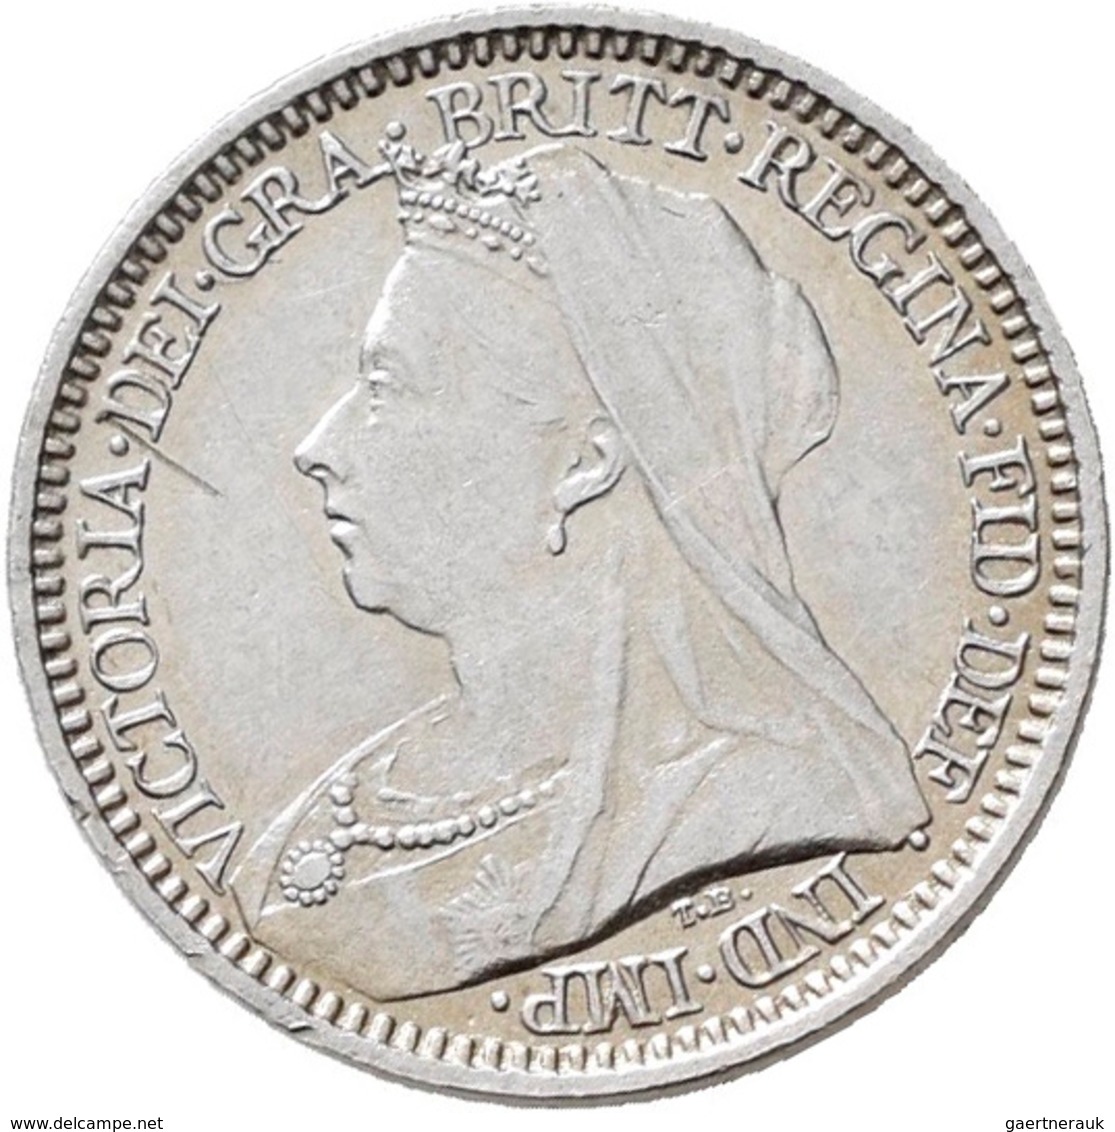 Großbritannien: Victoria 1837-1901: Maundy Set 1,2,3,4 Pence 1900, vorzüglich-Stempelglanz, Stempelg